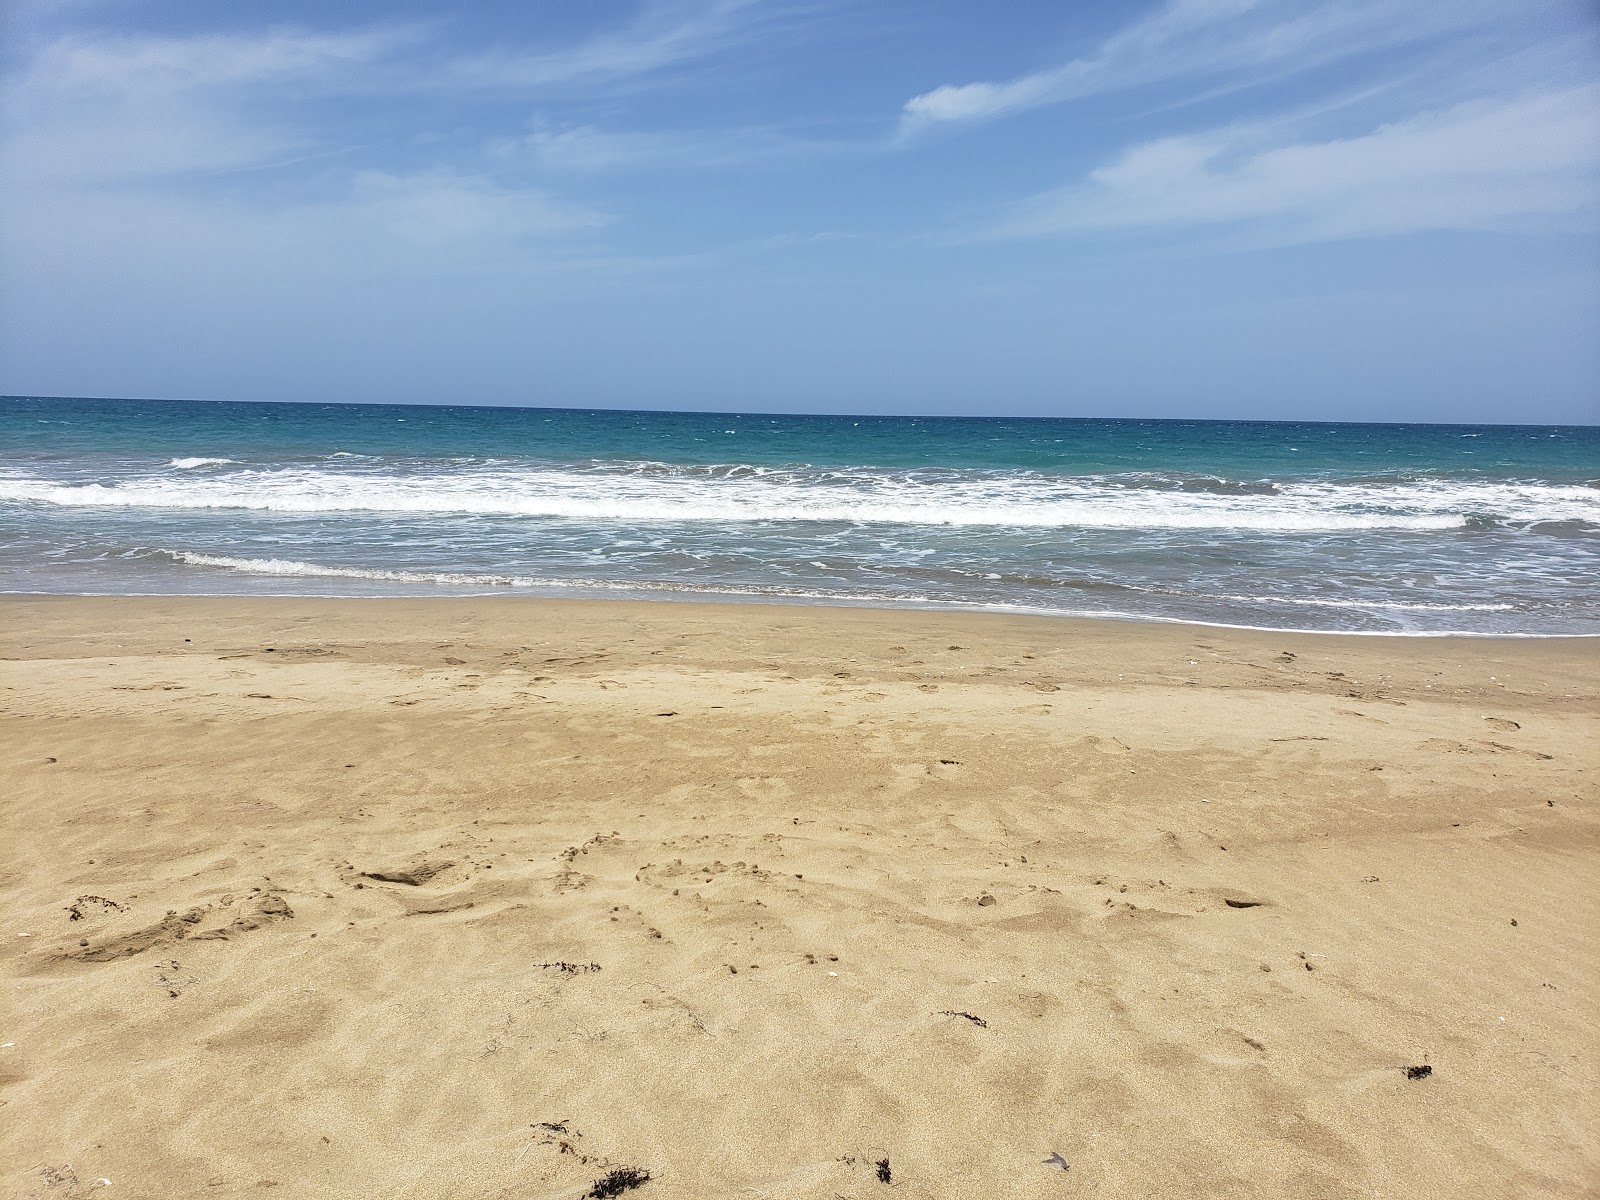 Photo de El Unico beach - endroit populaire parmi les connaisseurs de la détente